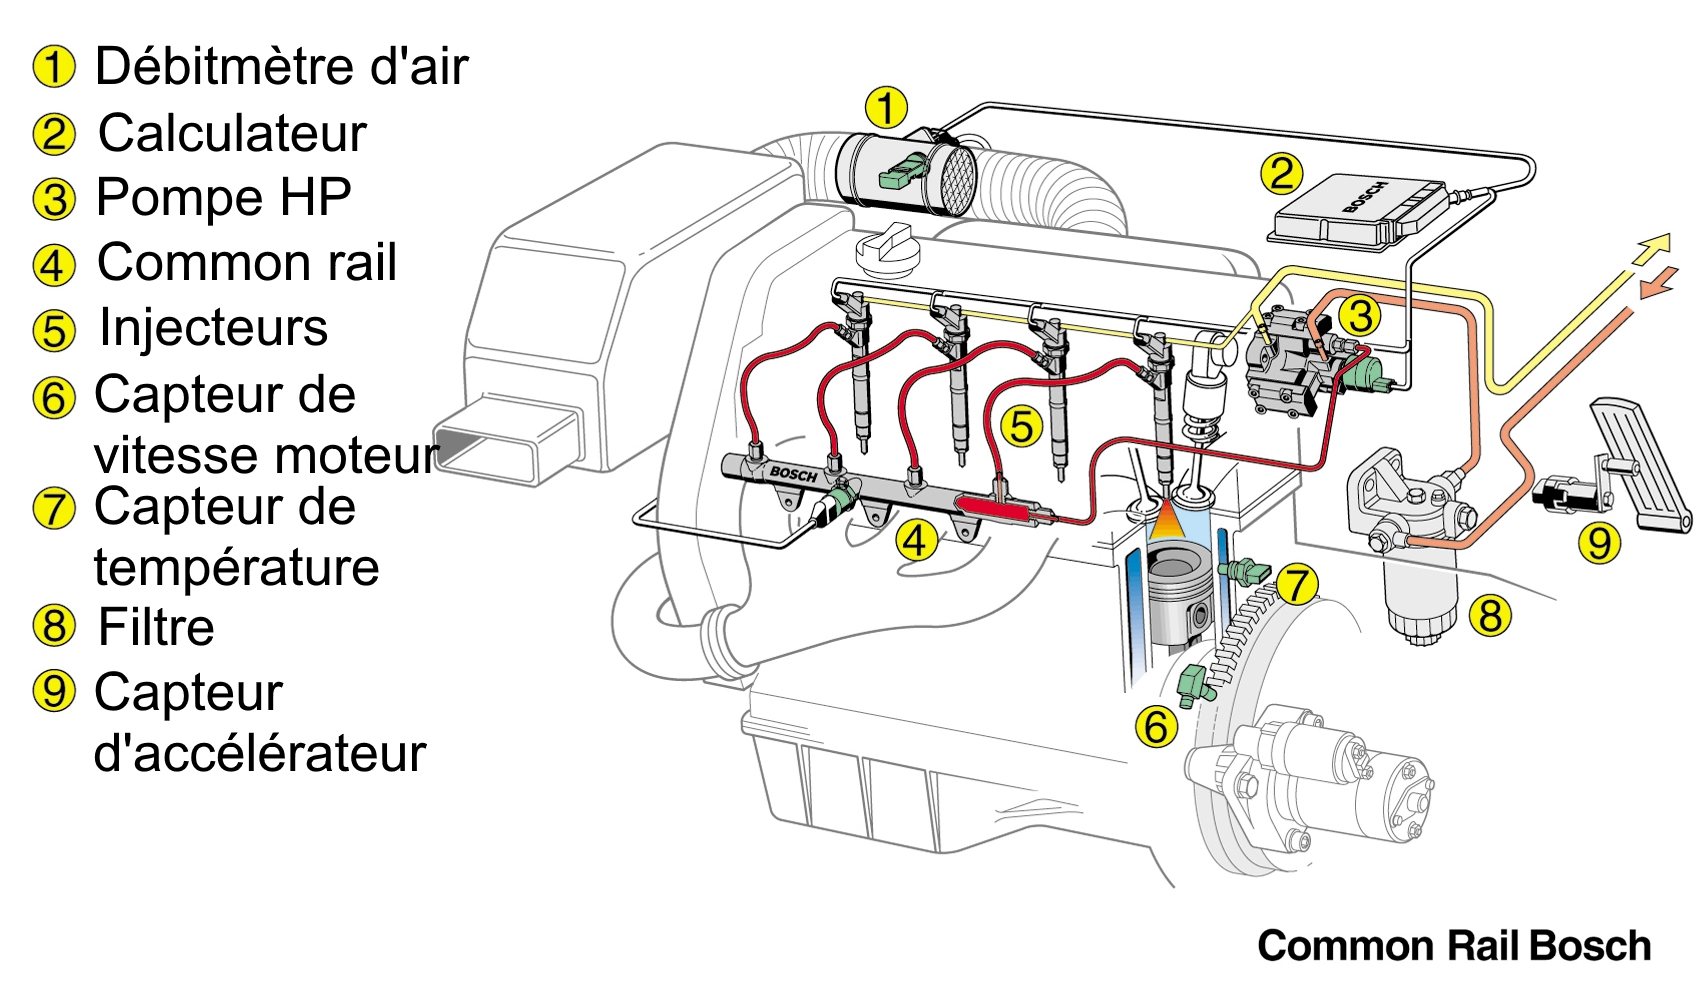 Montage type d’une injection diesel common rail -l’inspiratrice de l’injection directe d’essence-, auquel s’ajoute le papillon des gaz et l’allumage.